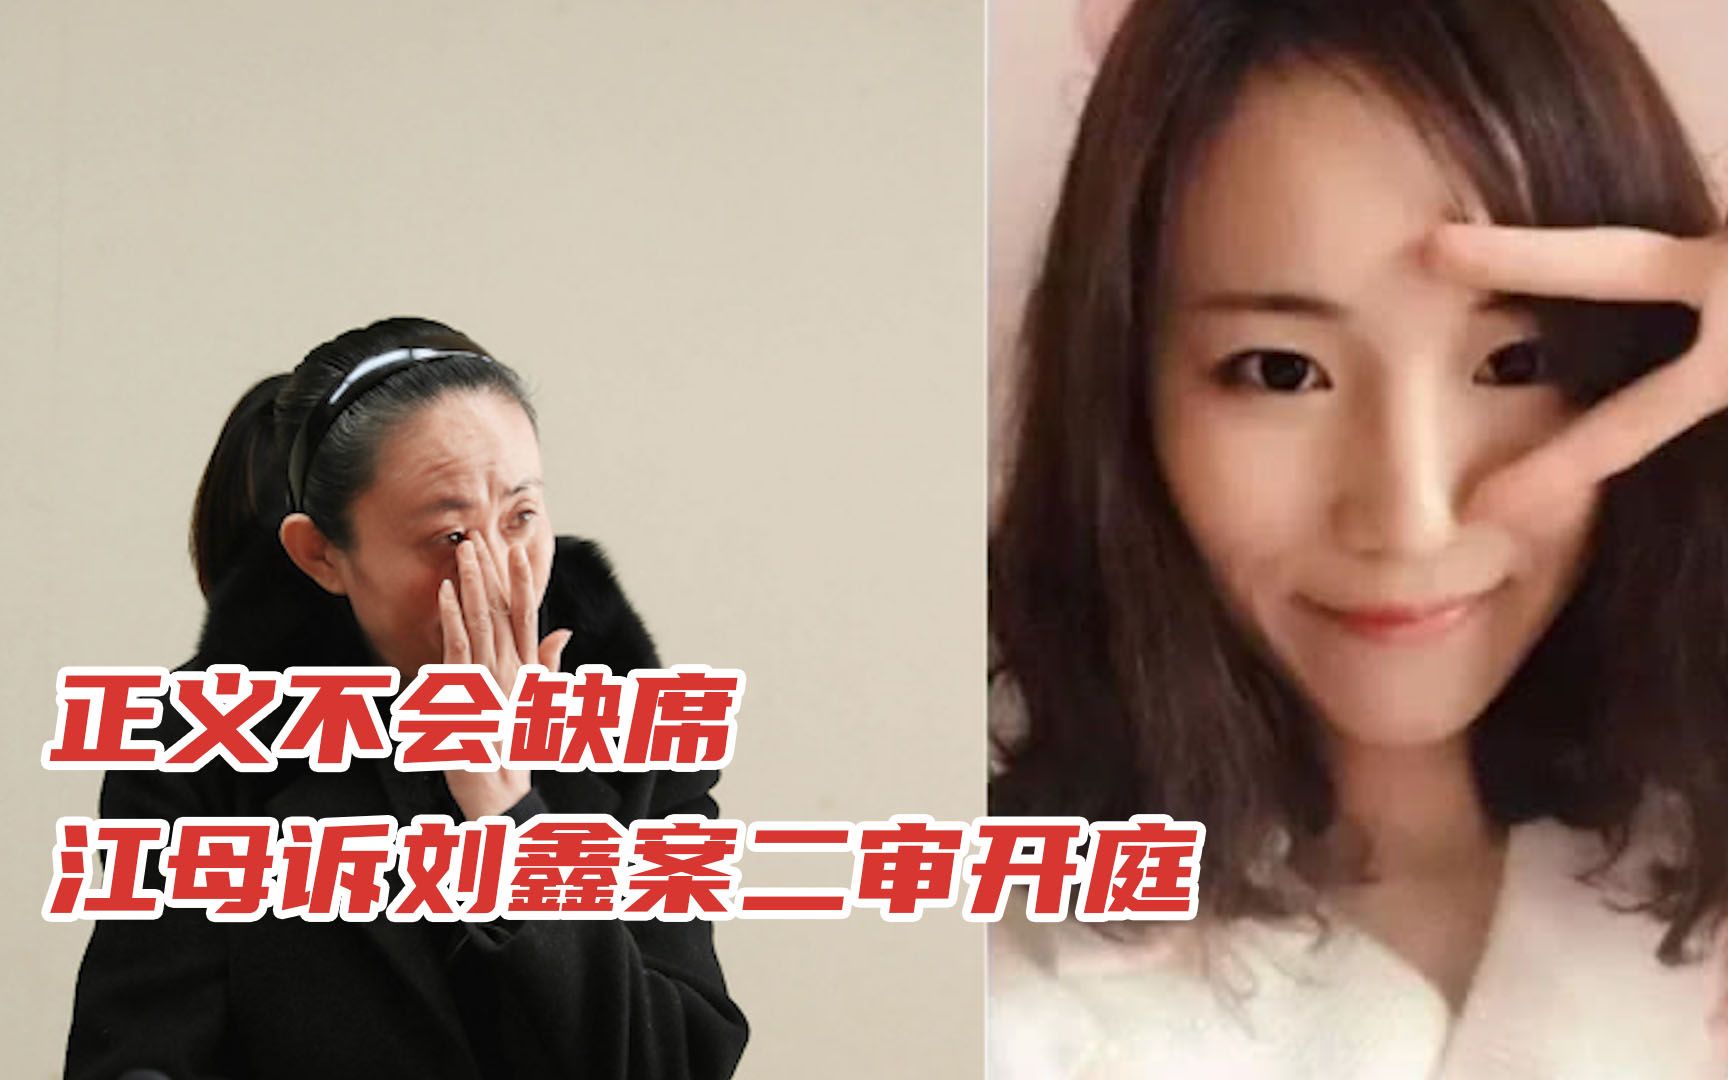 江歌母亲诉刘鑫案二审开庭:刘鑫到庭,江秋莲因身体原因未出庭